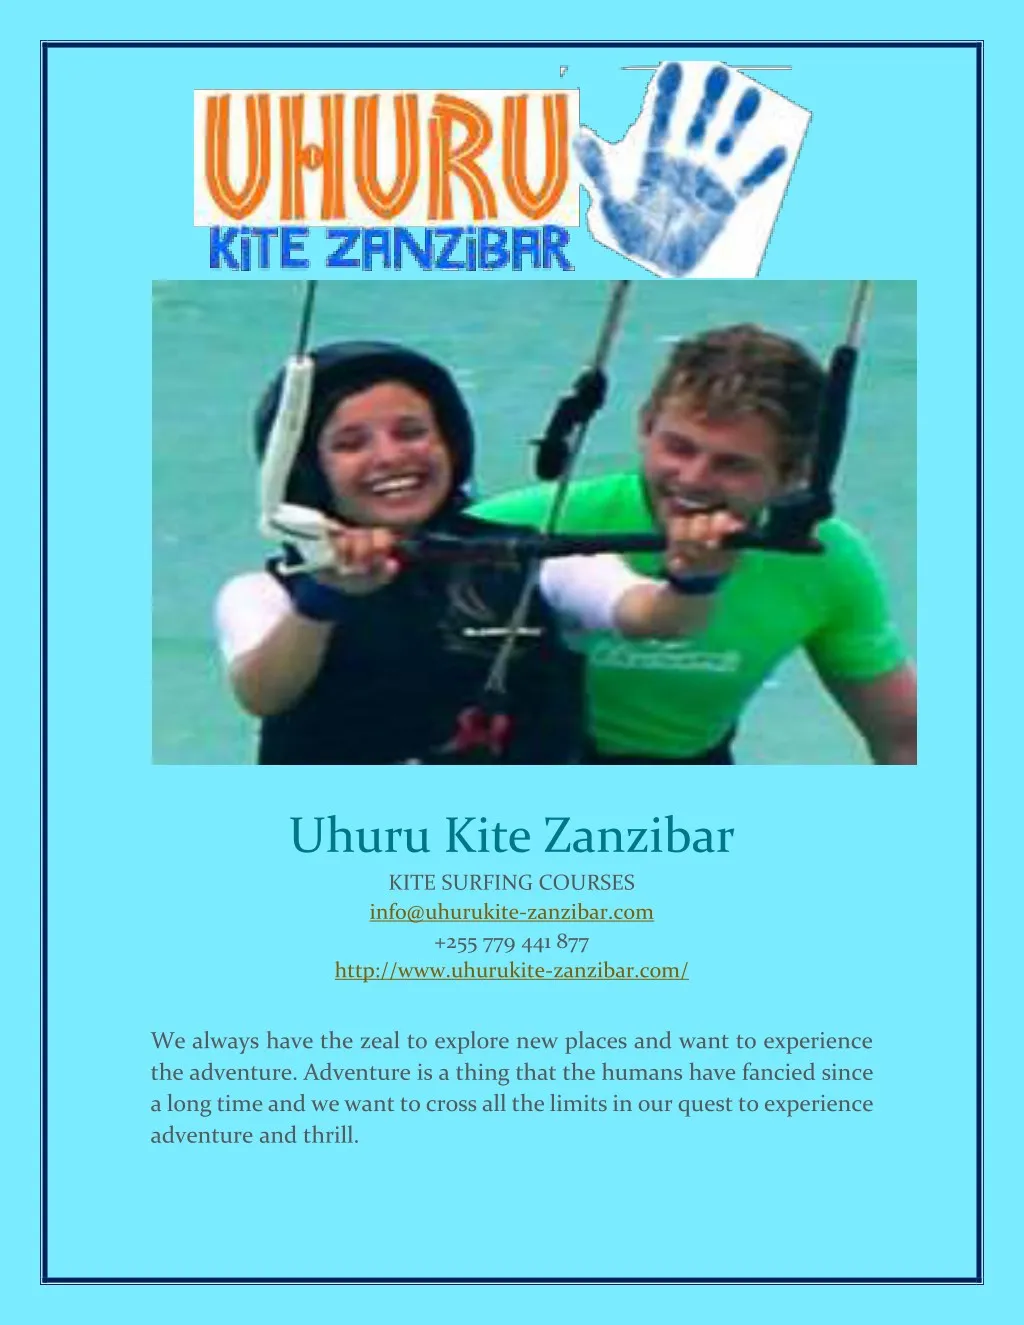 uhuru kite zanzibar kite surfing courses